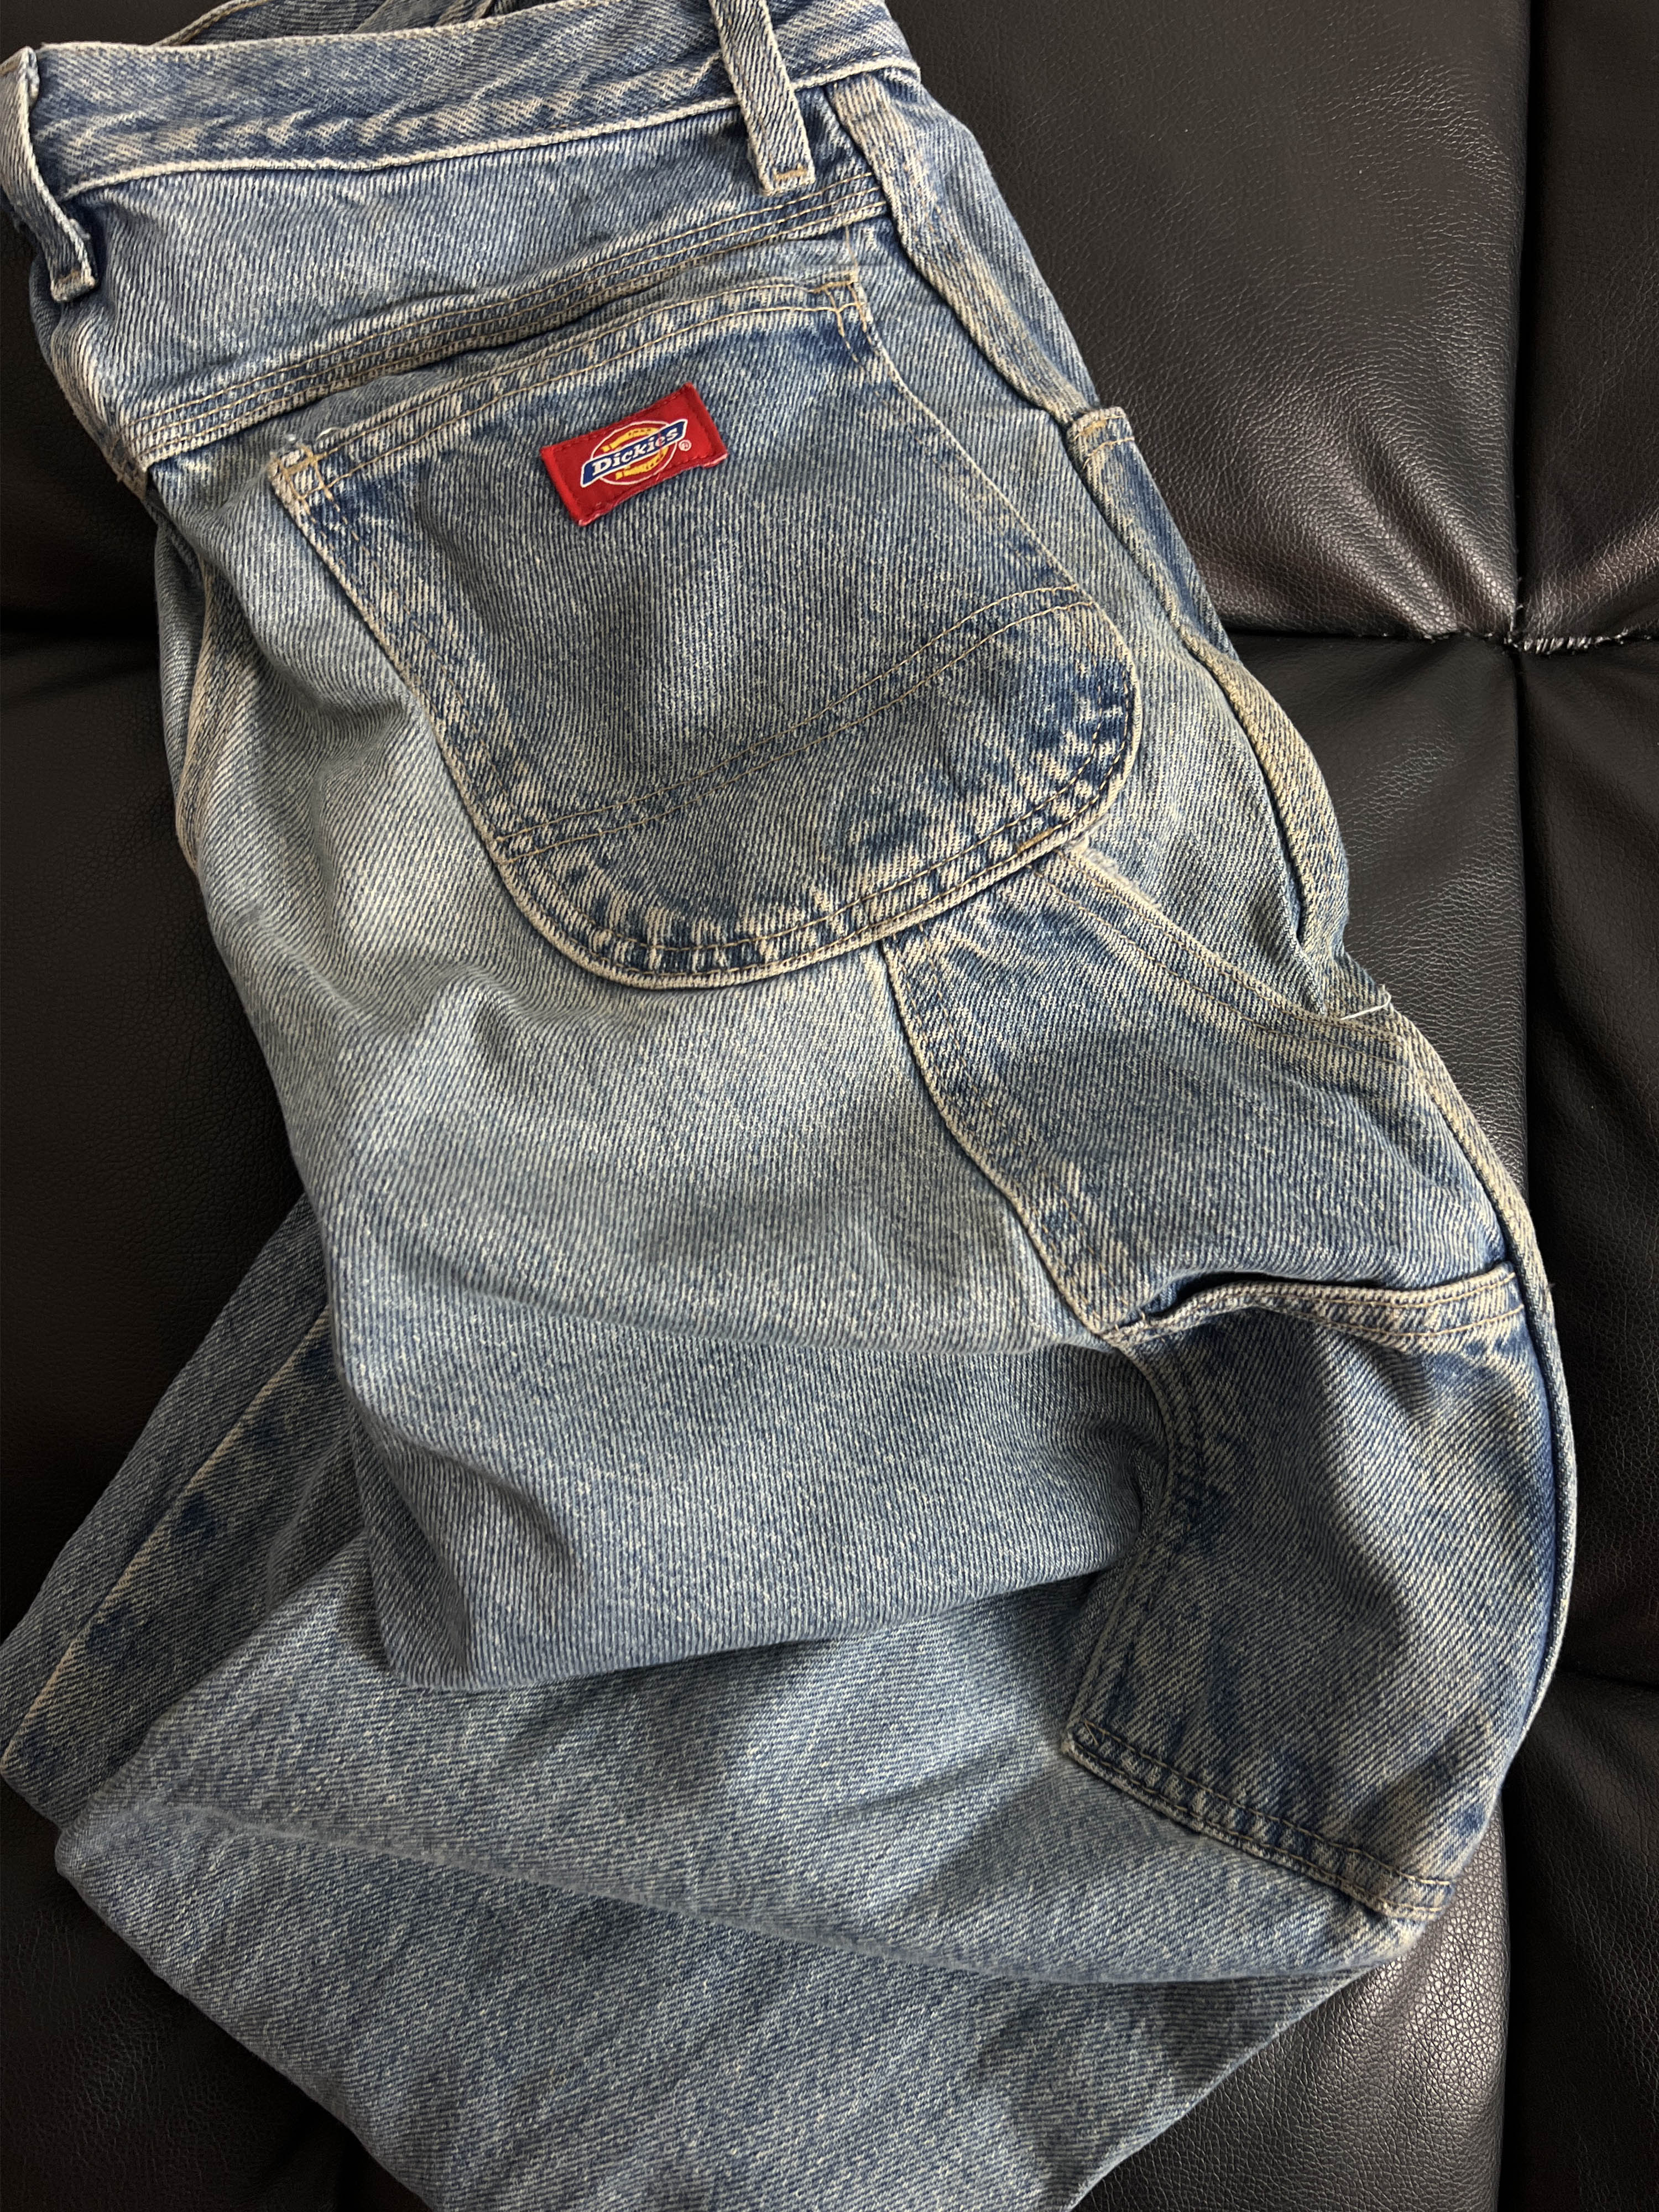 90s DICKIES carpenter pants